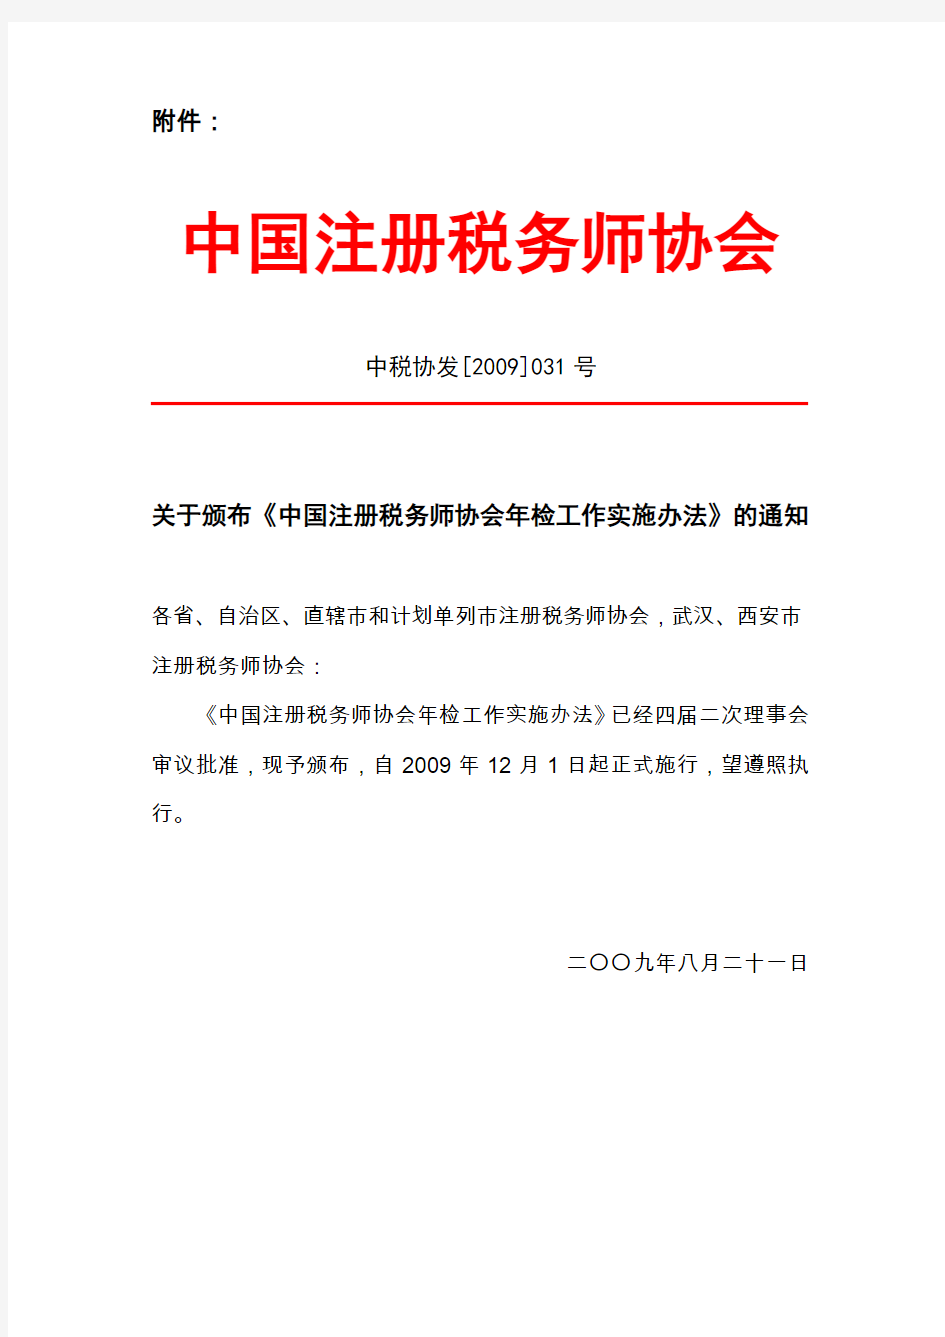 中国注册税务师协会年检工作实施办法